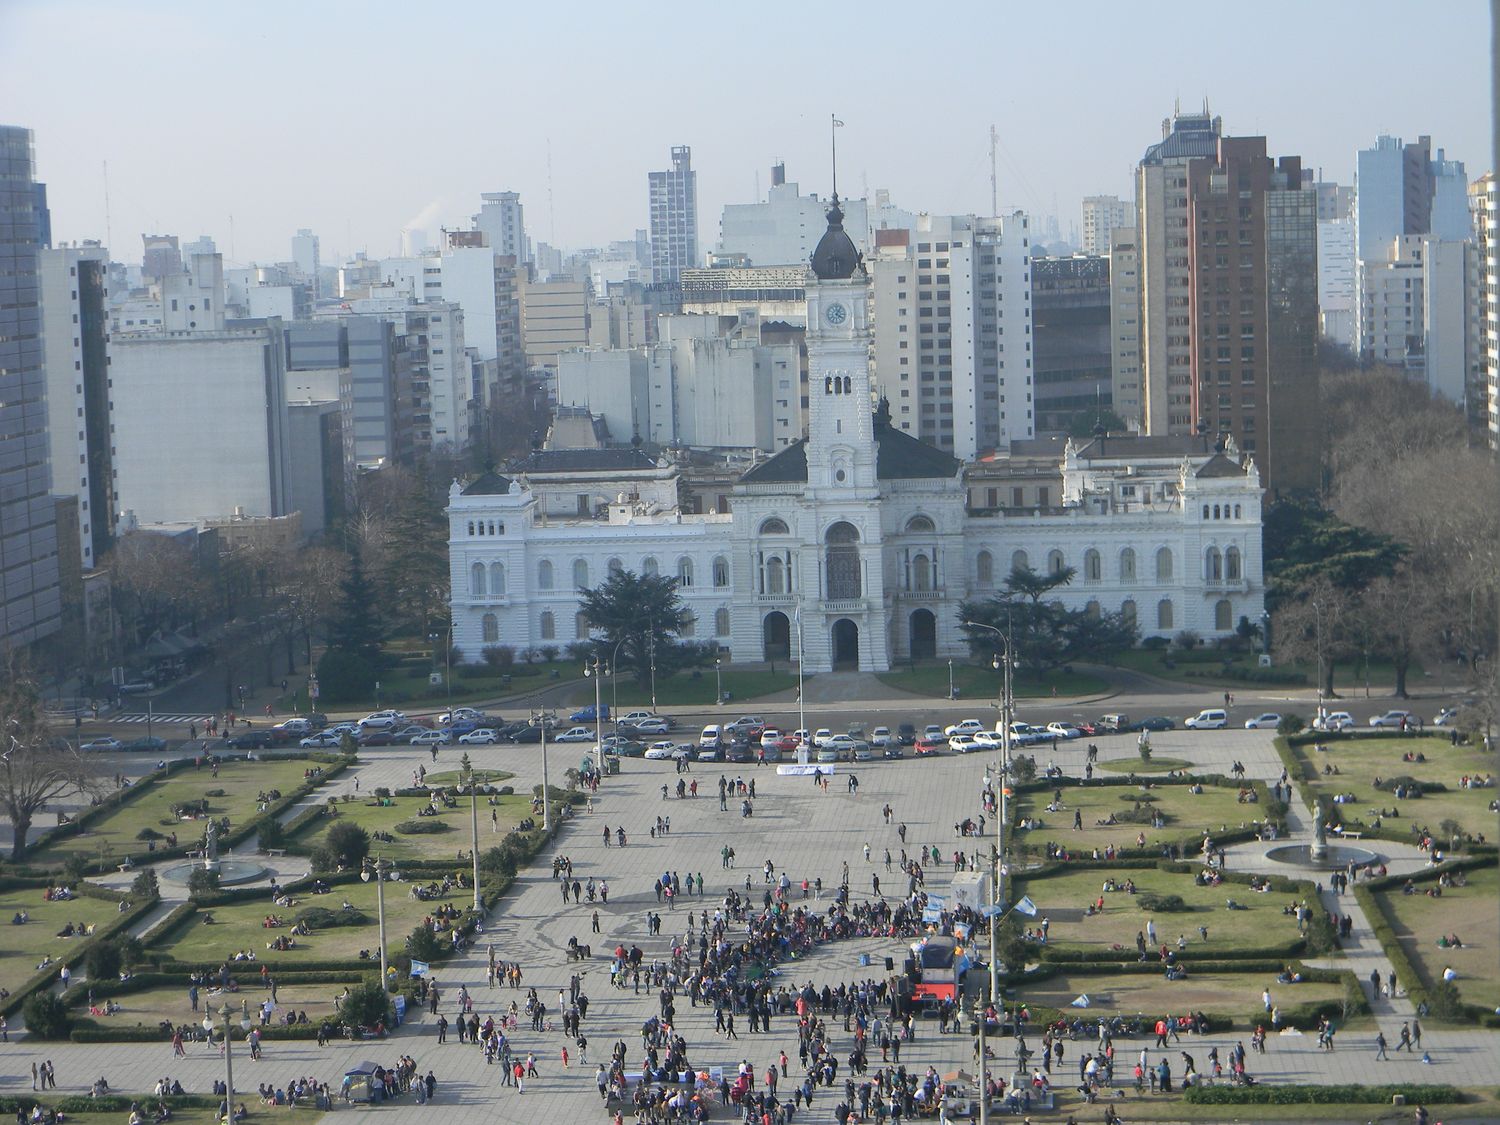 Aniversario de La Plata: No habrá bancos ni actividad pública este jueves